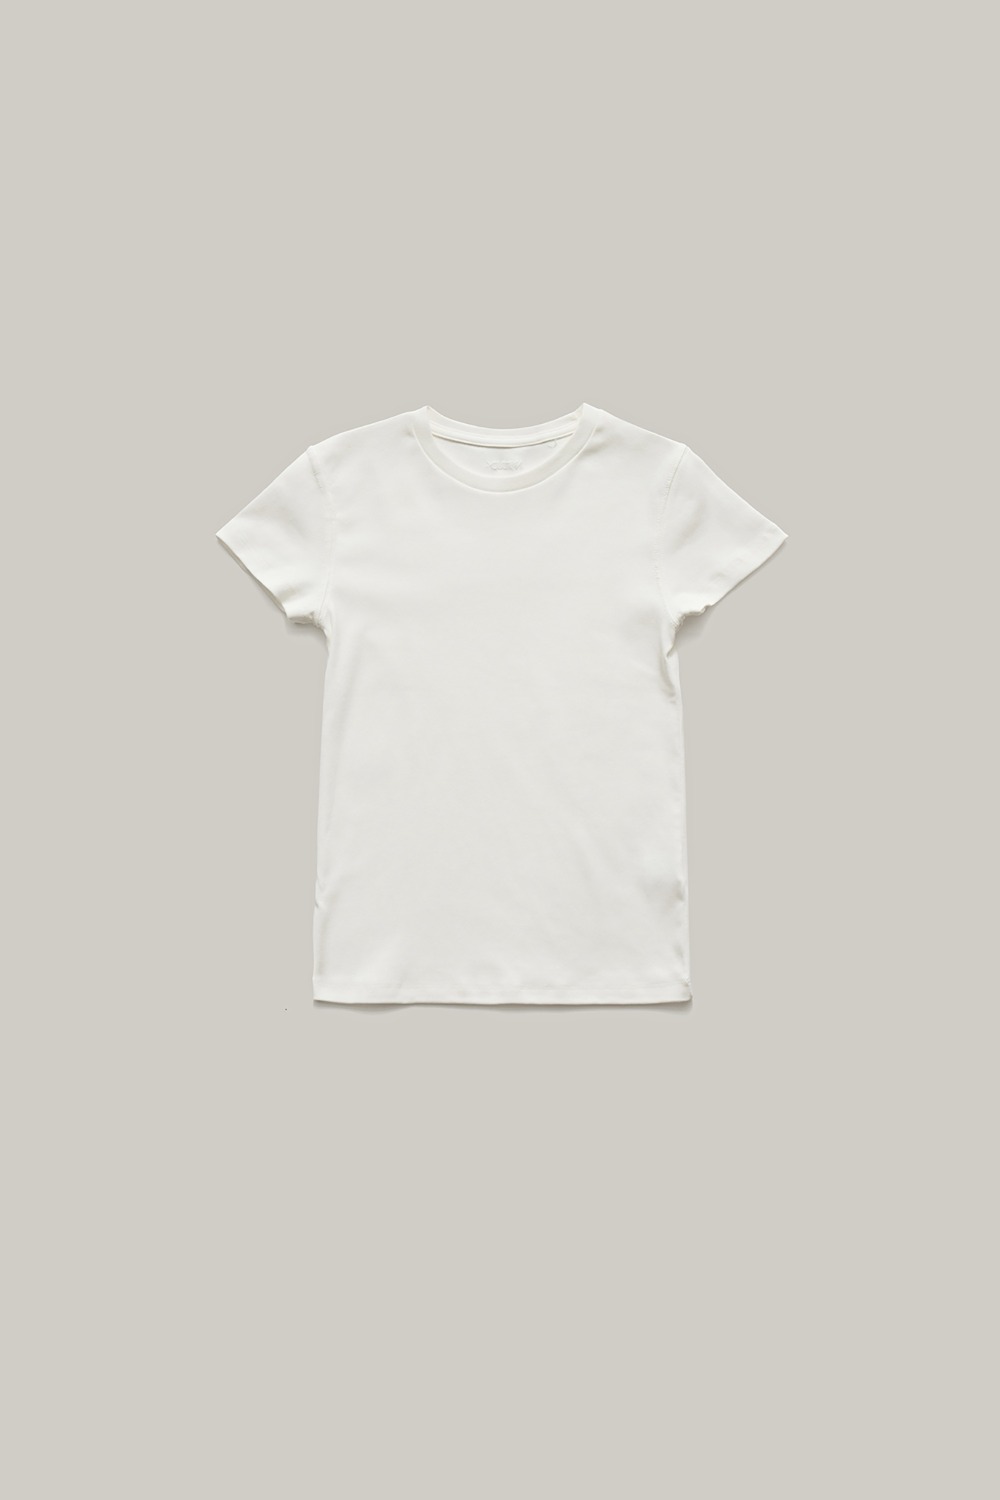 2nd/Short sleeved T-shirt (White)